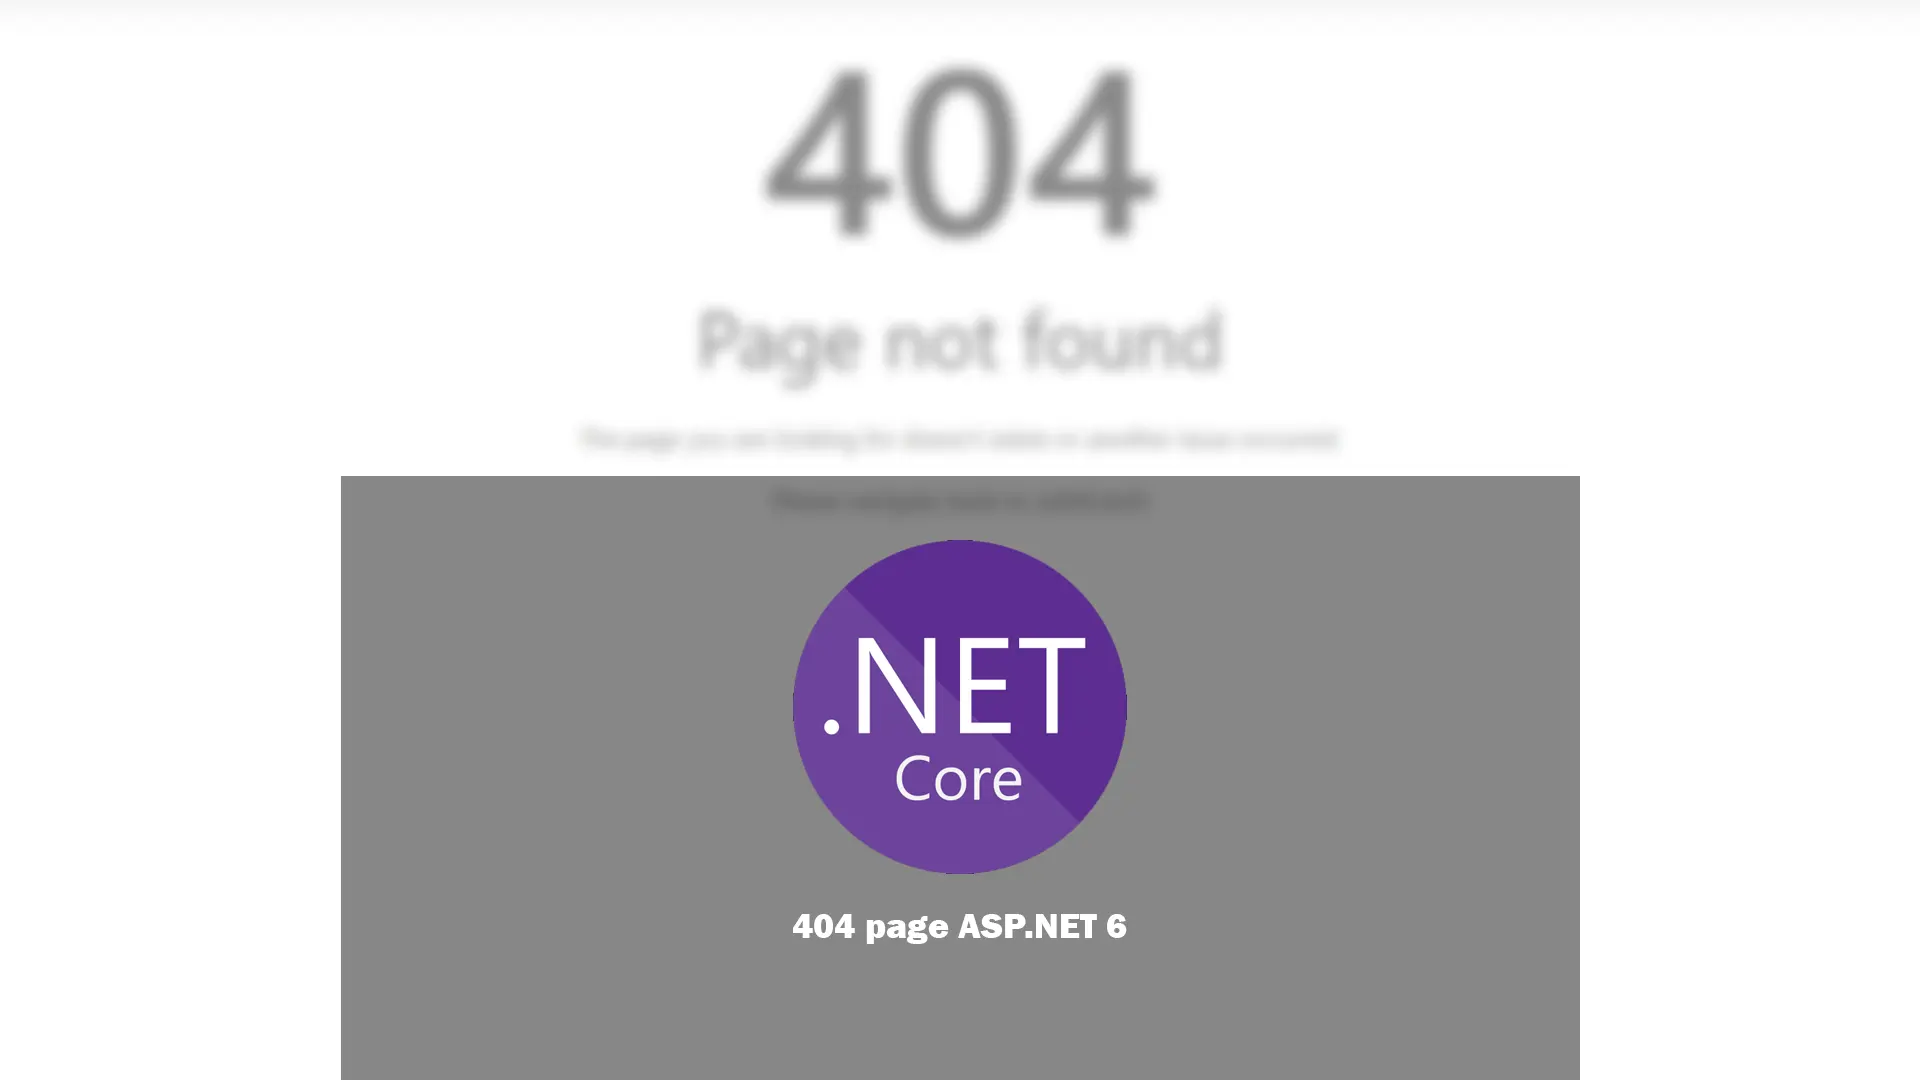 ASP.NET 404 default page